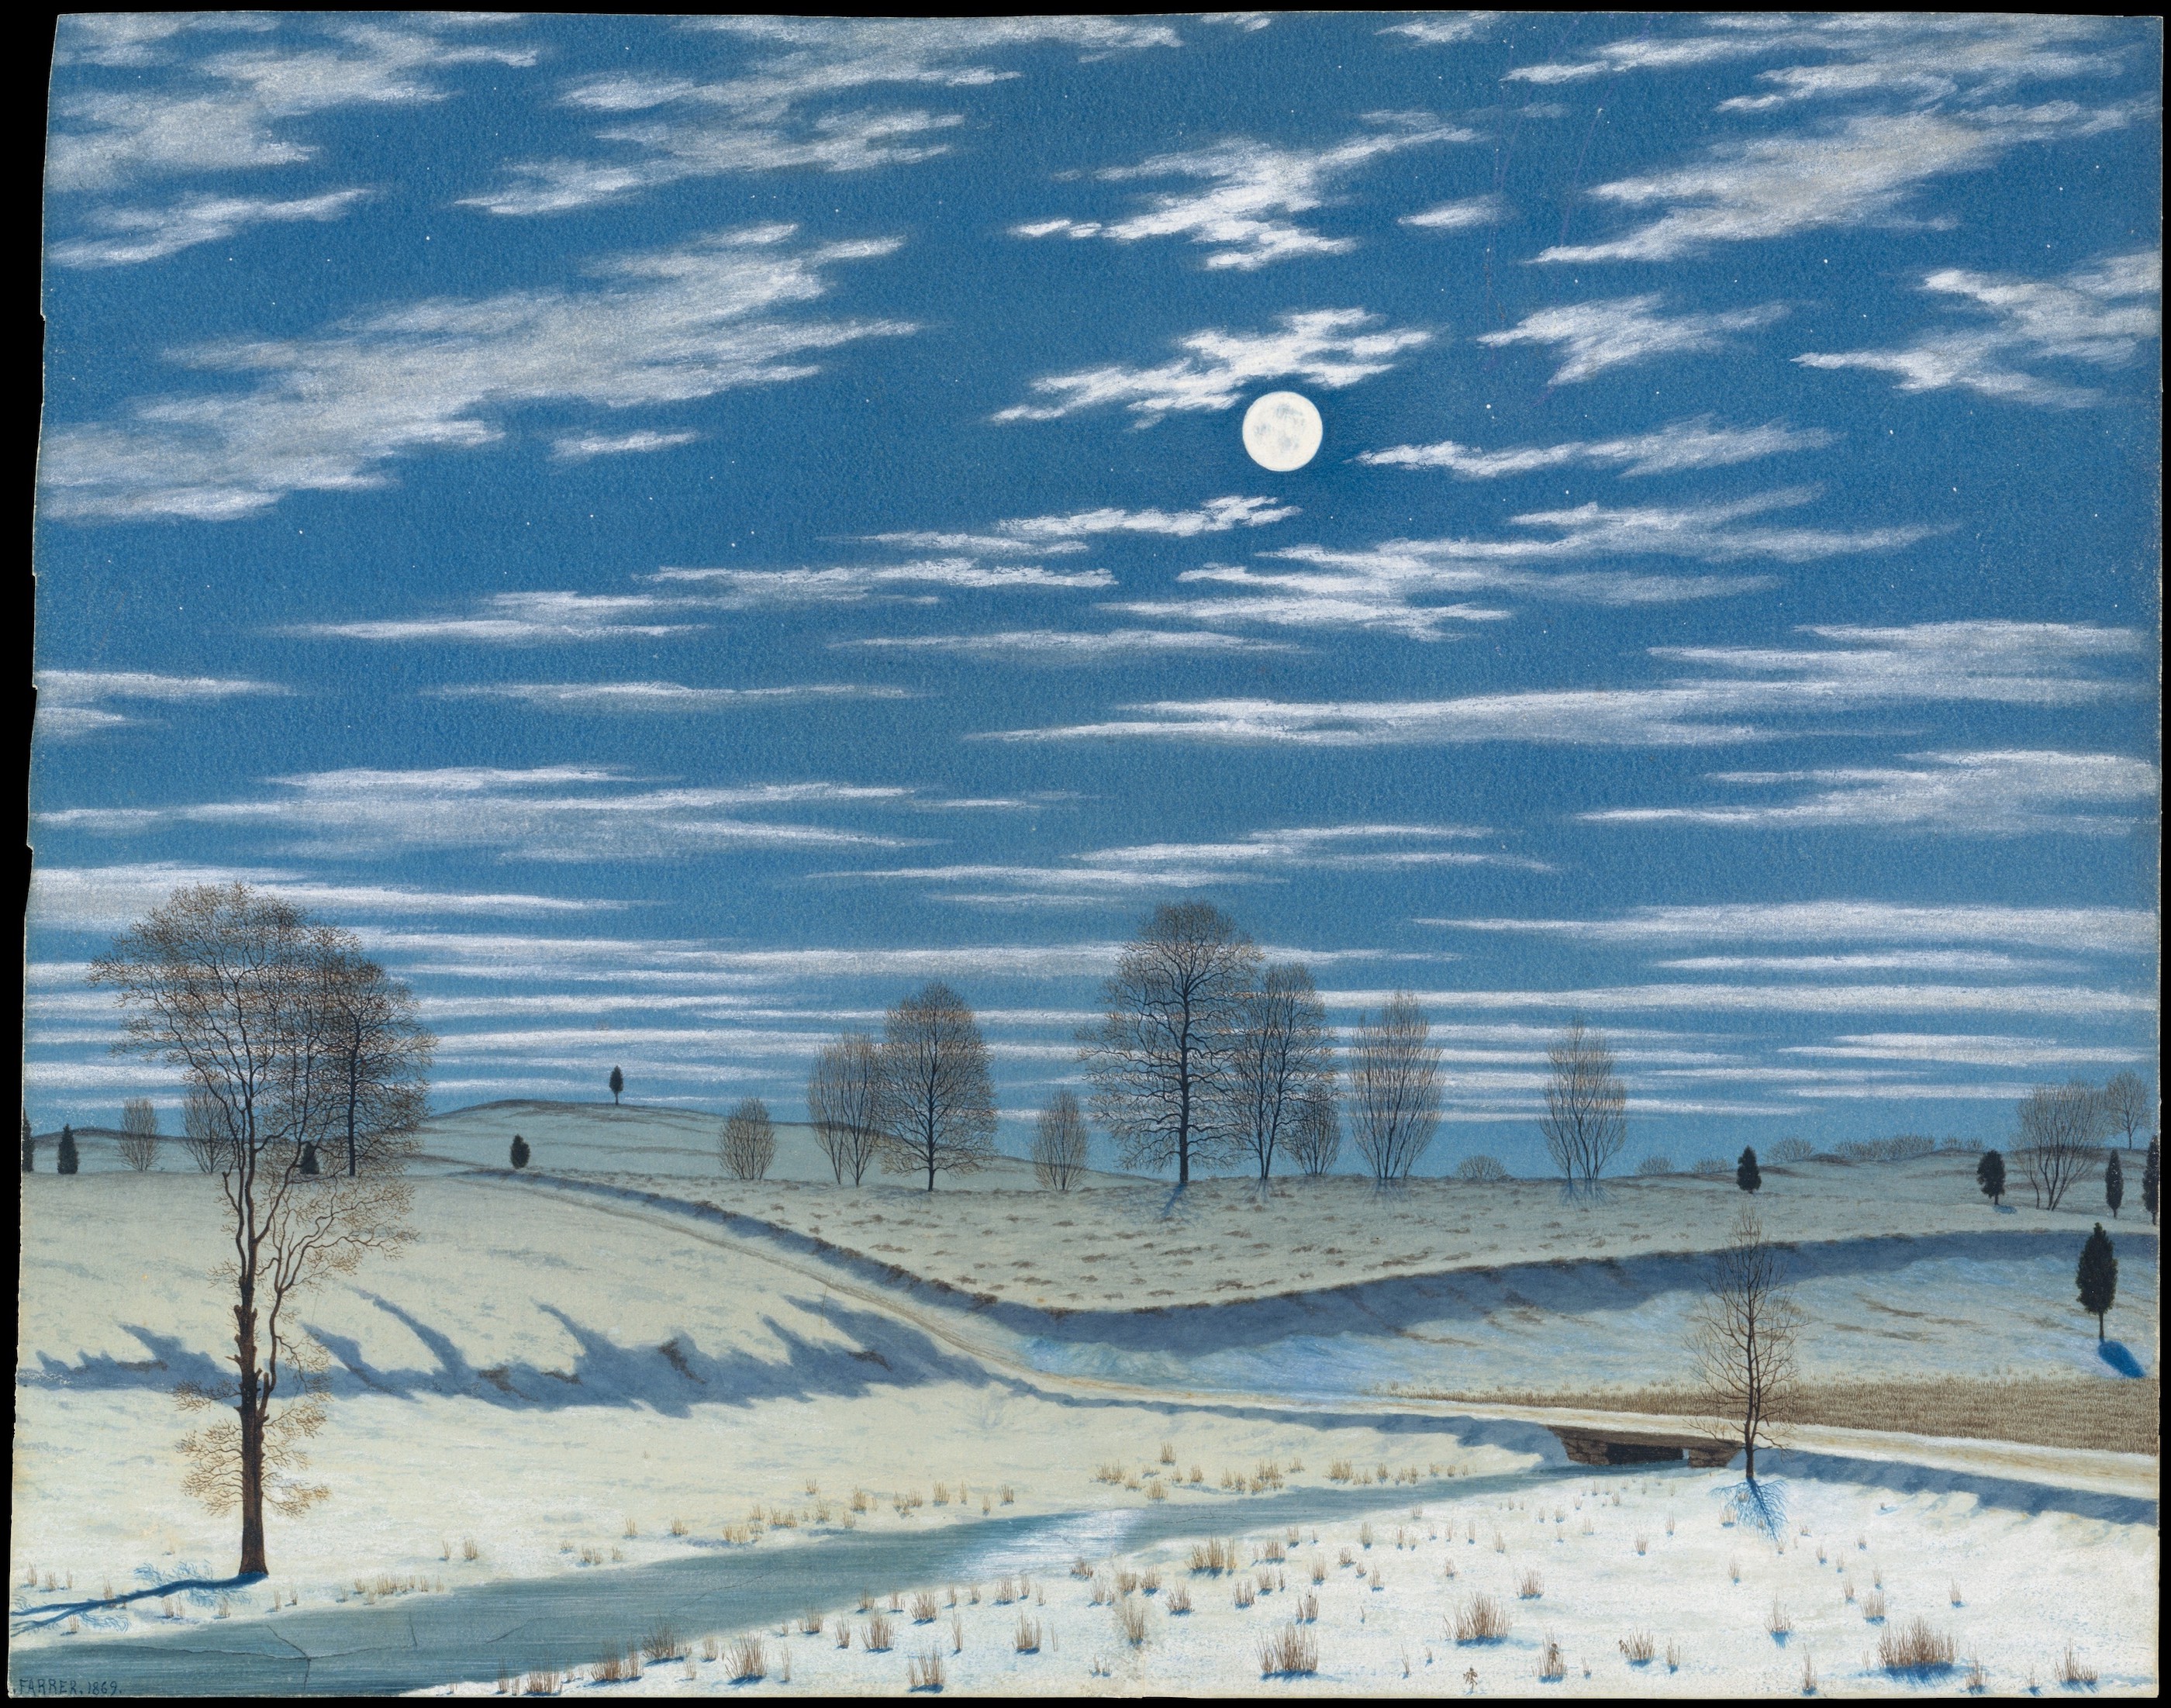 달빛의 겨울 풍경(Winter Scene in Moonlight) by Henry Farrer - 1869년 - 30.2 x 38.6 cm 